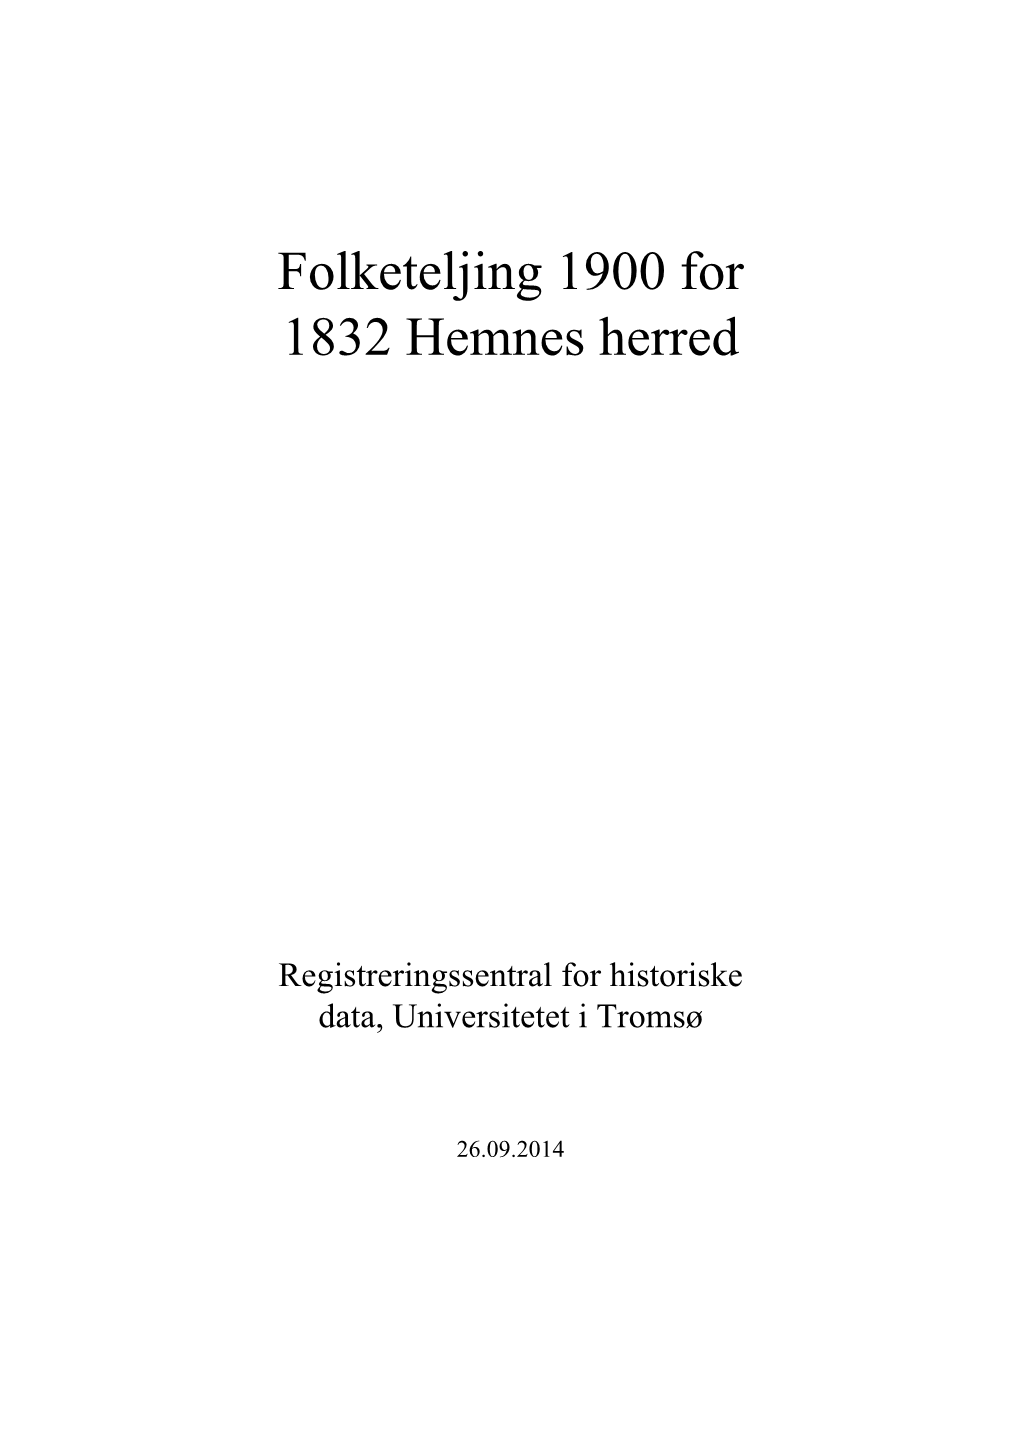 Folketeljing 1900 for 1832 Hemnes Herred